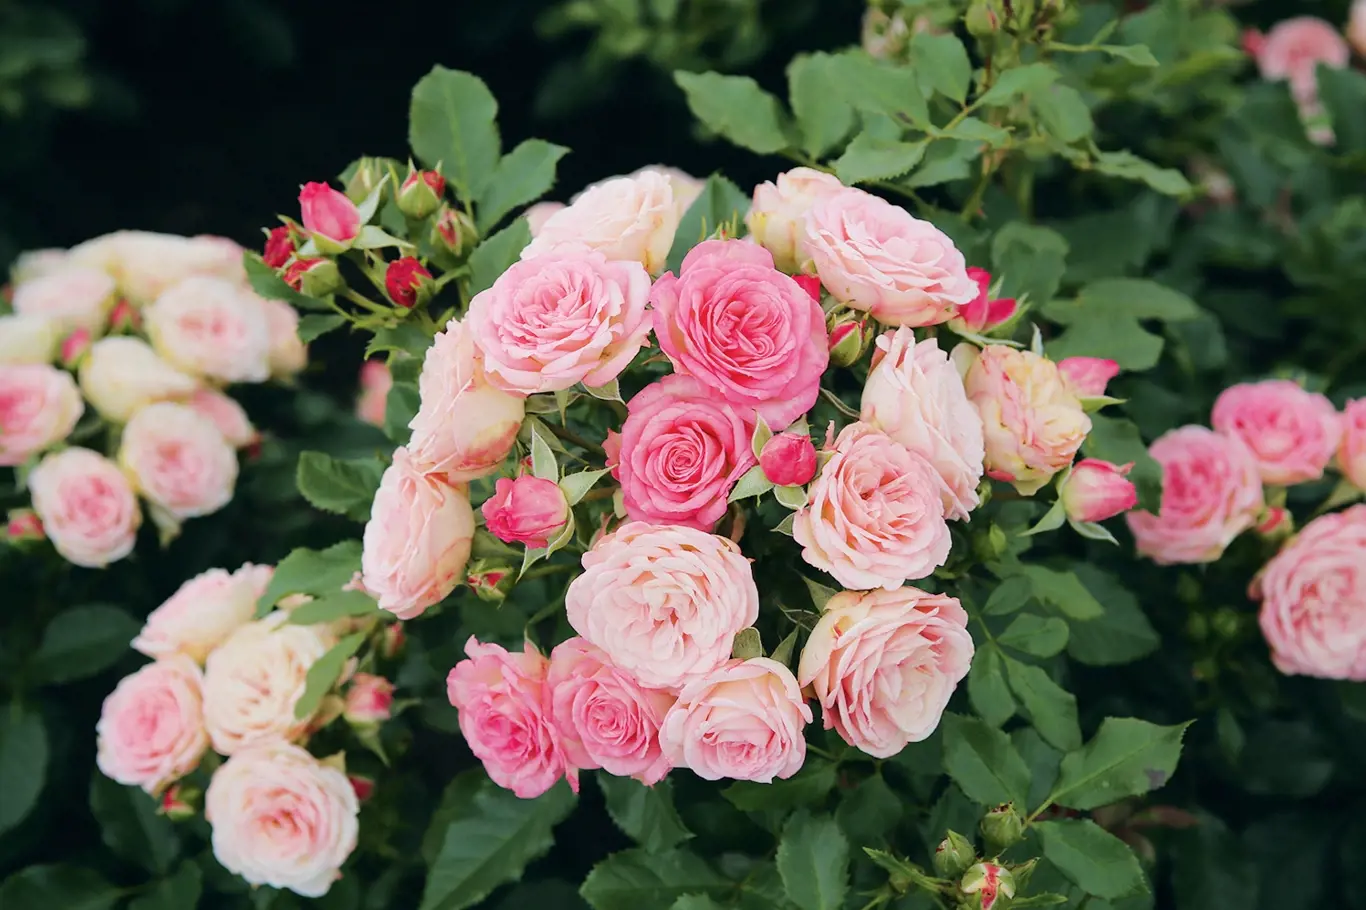 XENIA je vydařená novinka v sortimentu nižších mnohokvětých růží s výškou asi 70 cm. Květy jsou barevně proměnlivé od krémových přes růžové až k červenavým tónům